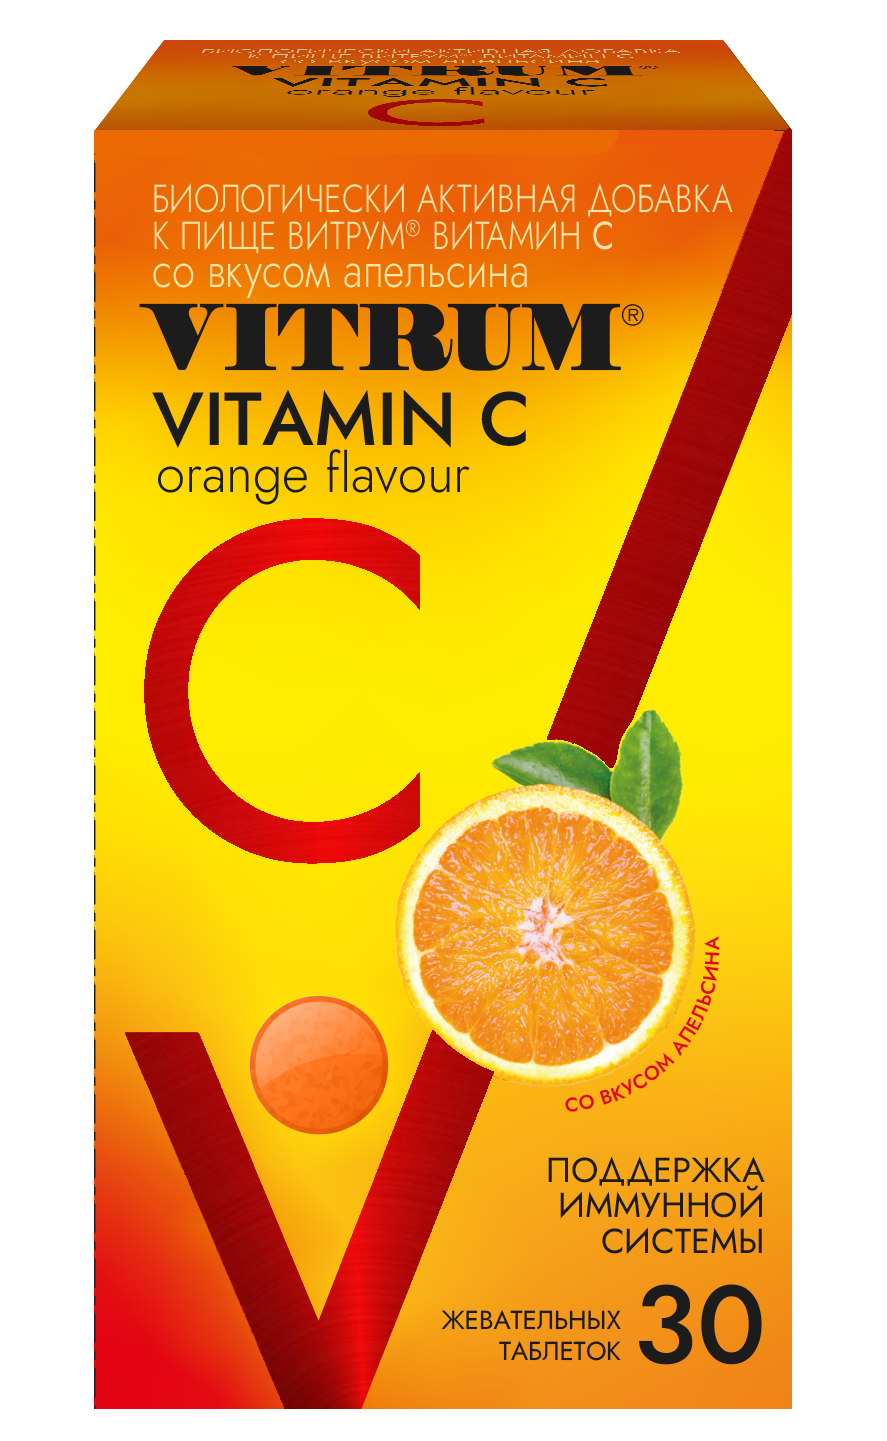 Витрум Витамин С, таблетки жевательные, со вкусом апельсина, 30 шт.